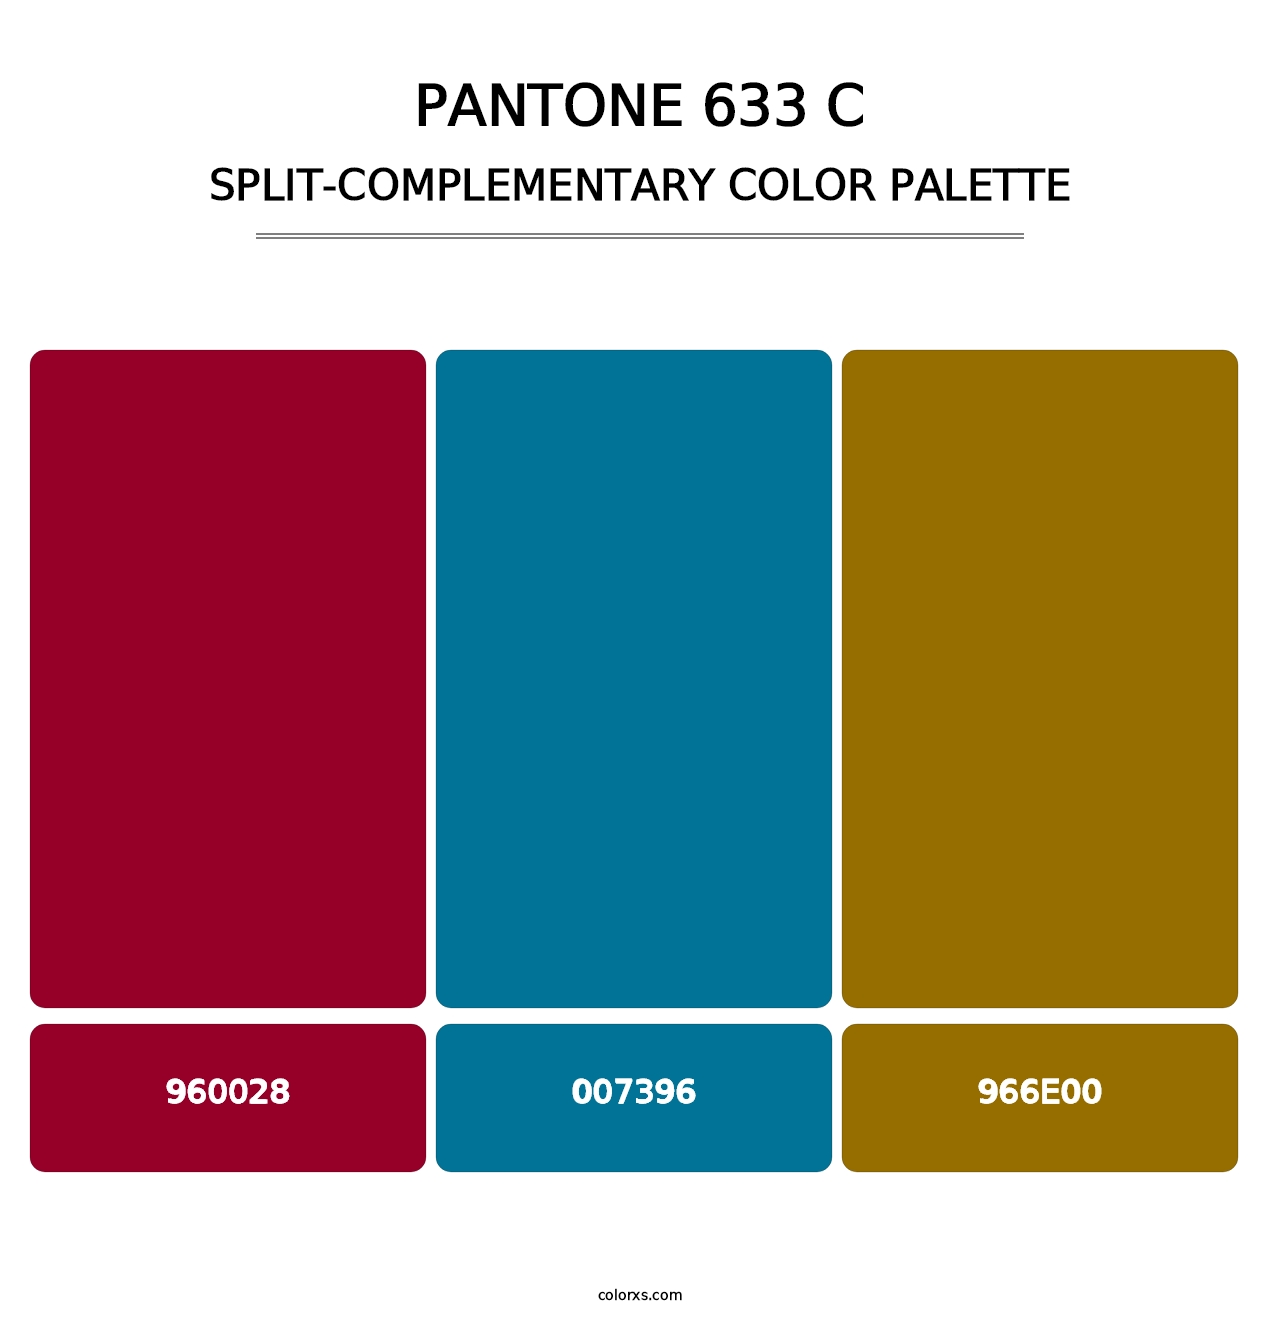 PANTONE 633 C - Split-Complementary Color Palette